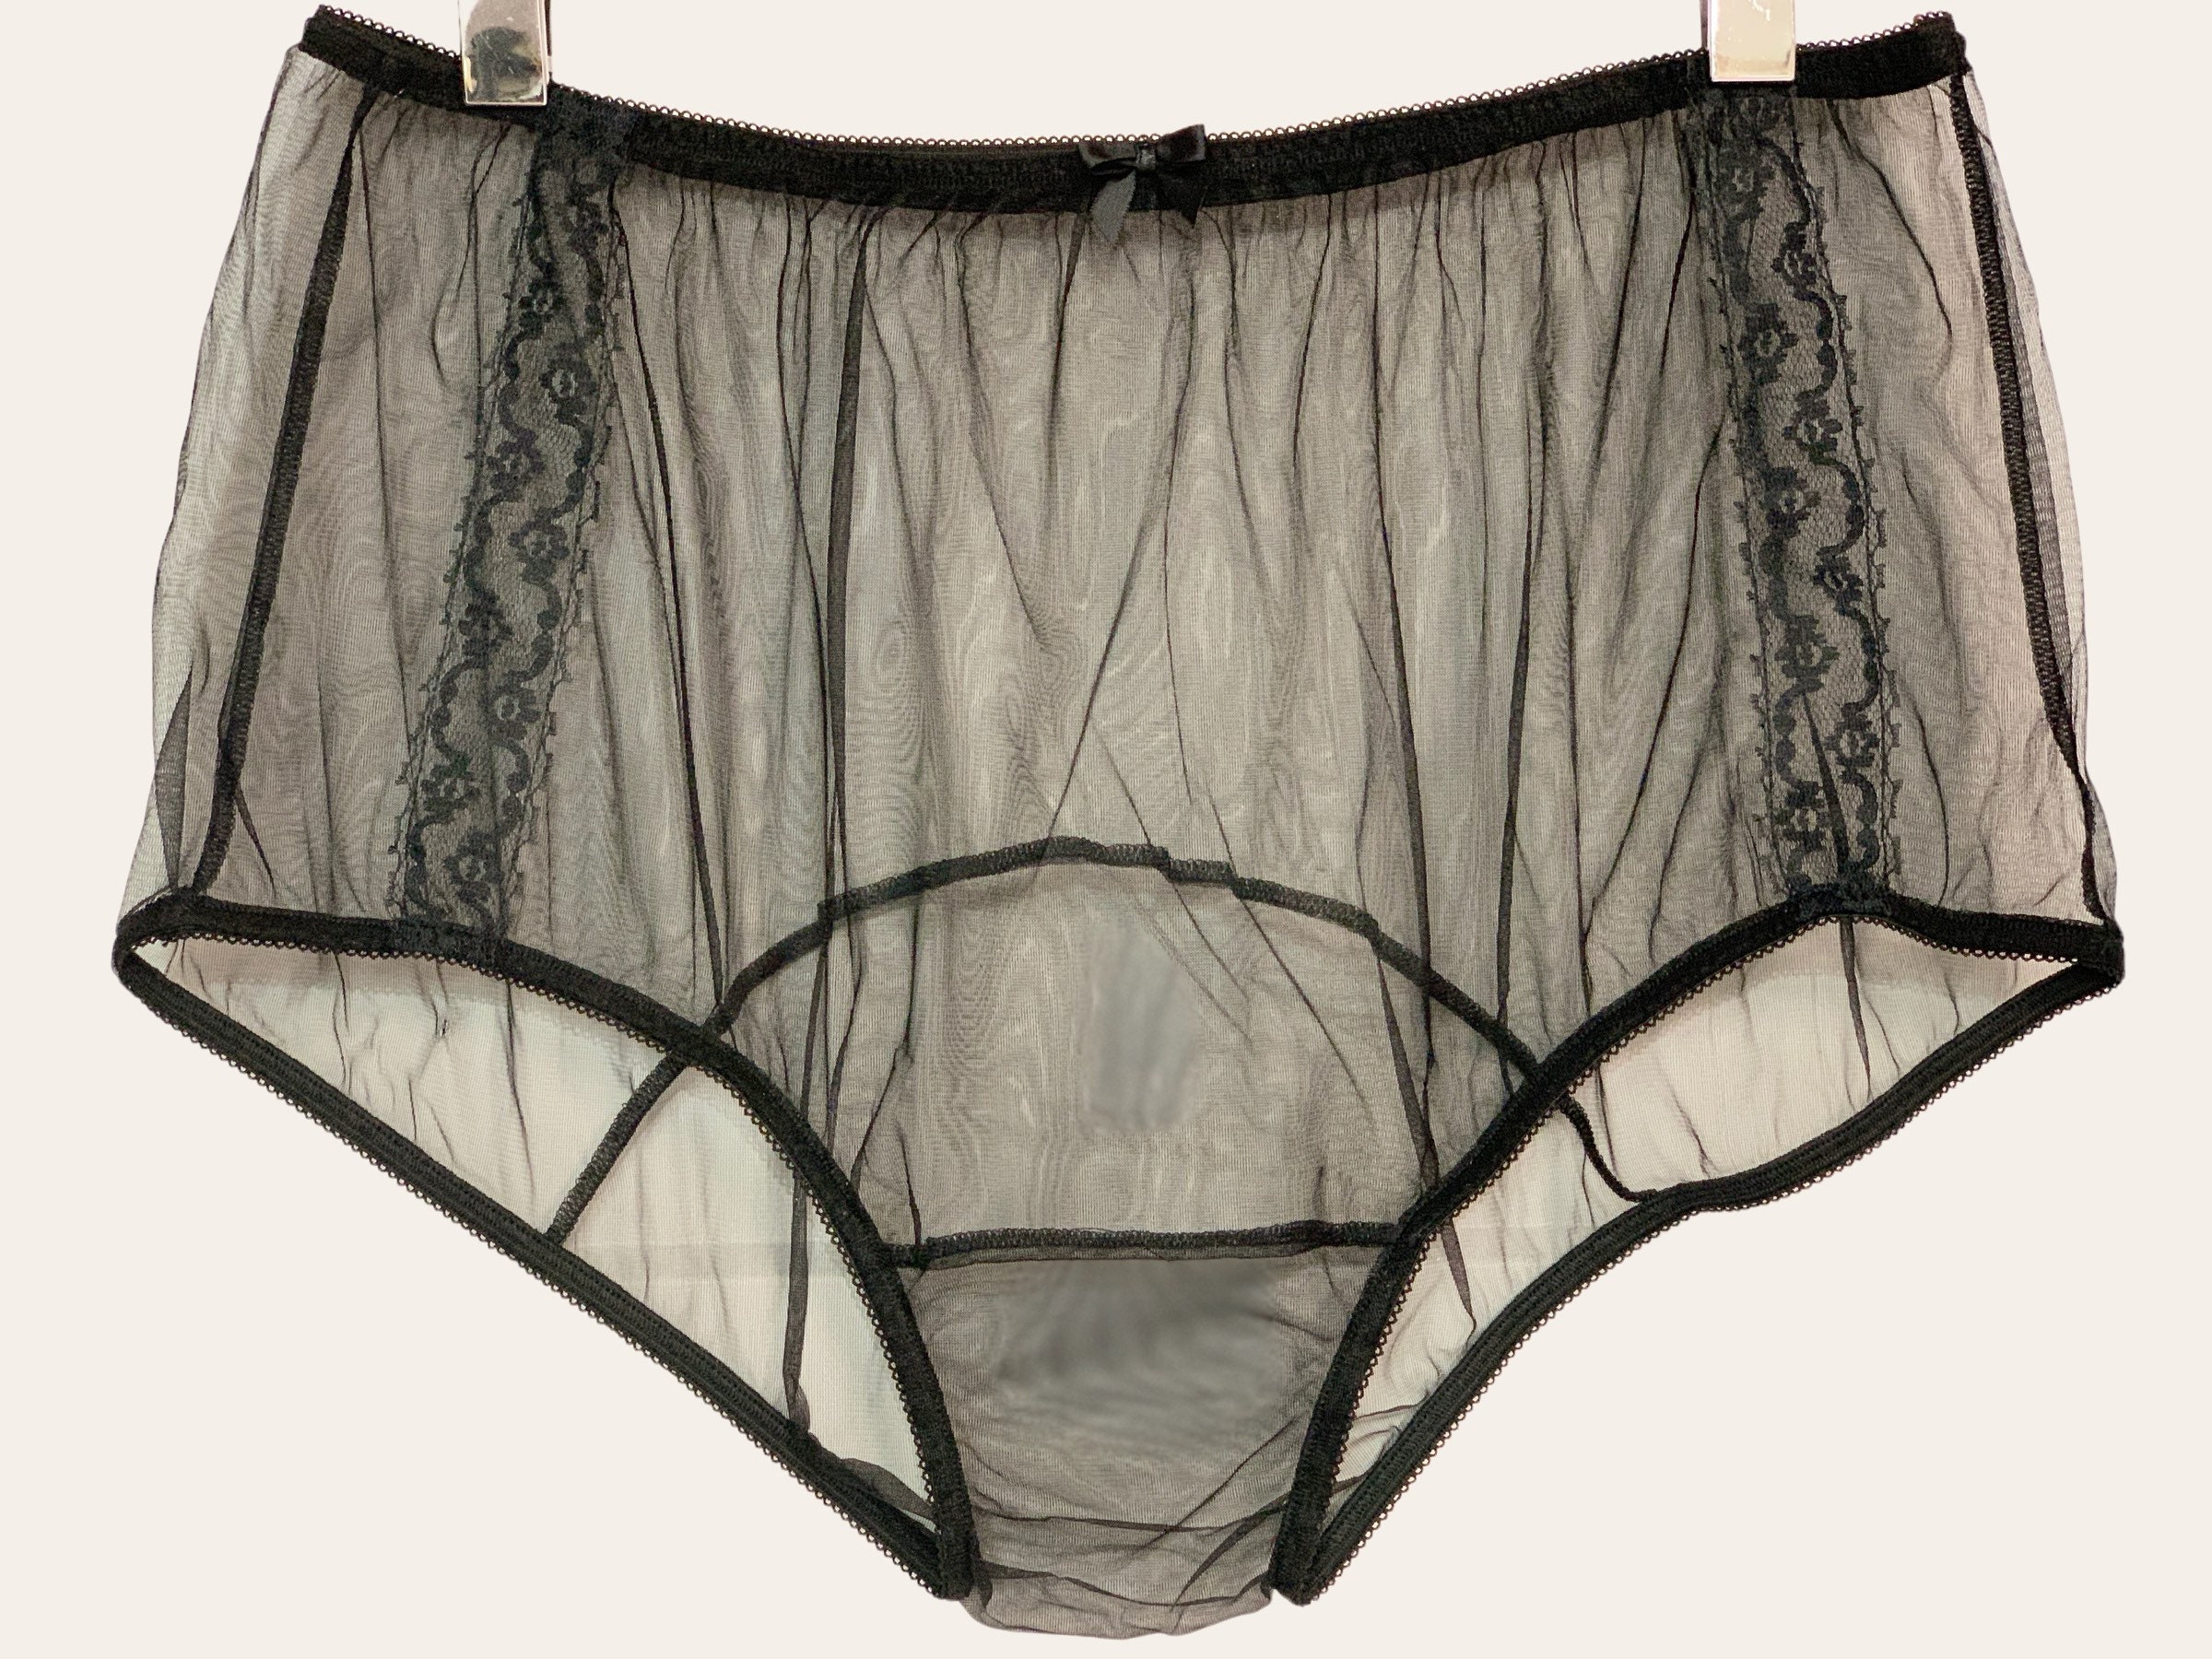 Buy Vintage Style Sheer Nylon Contrast Gusset Panties Online in India 